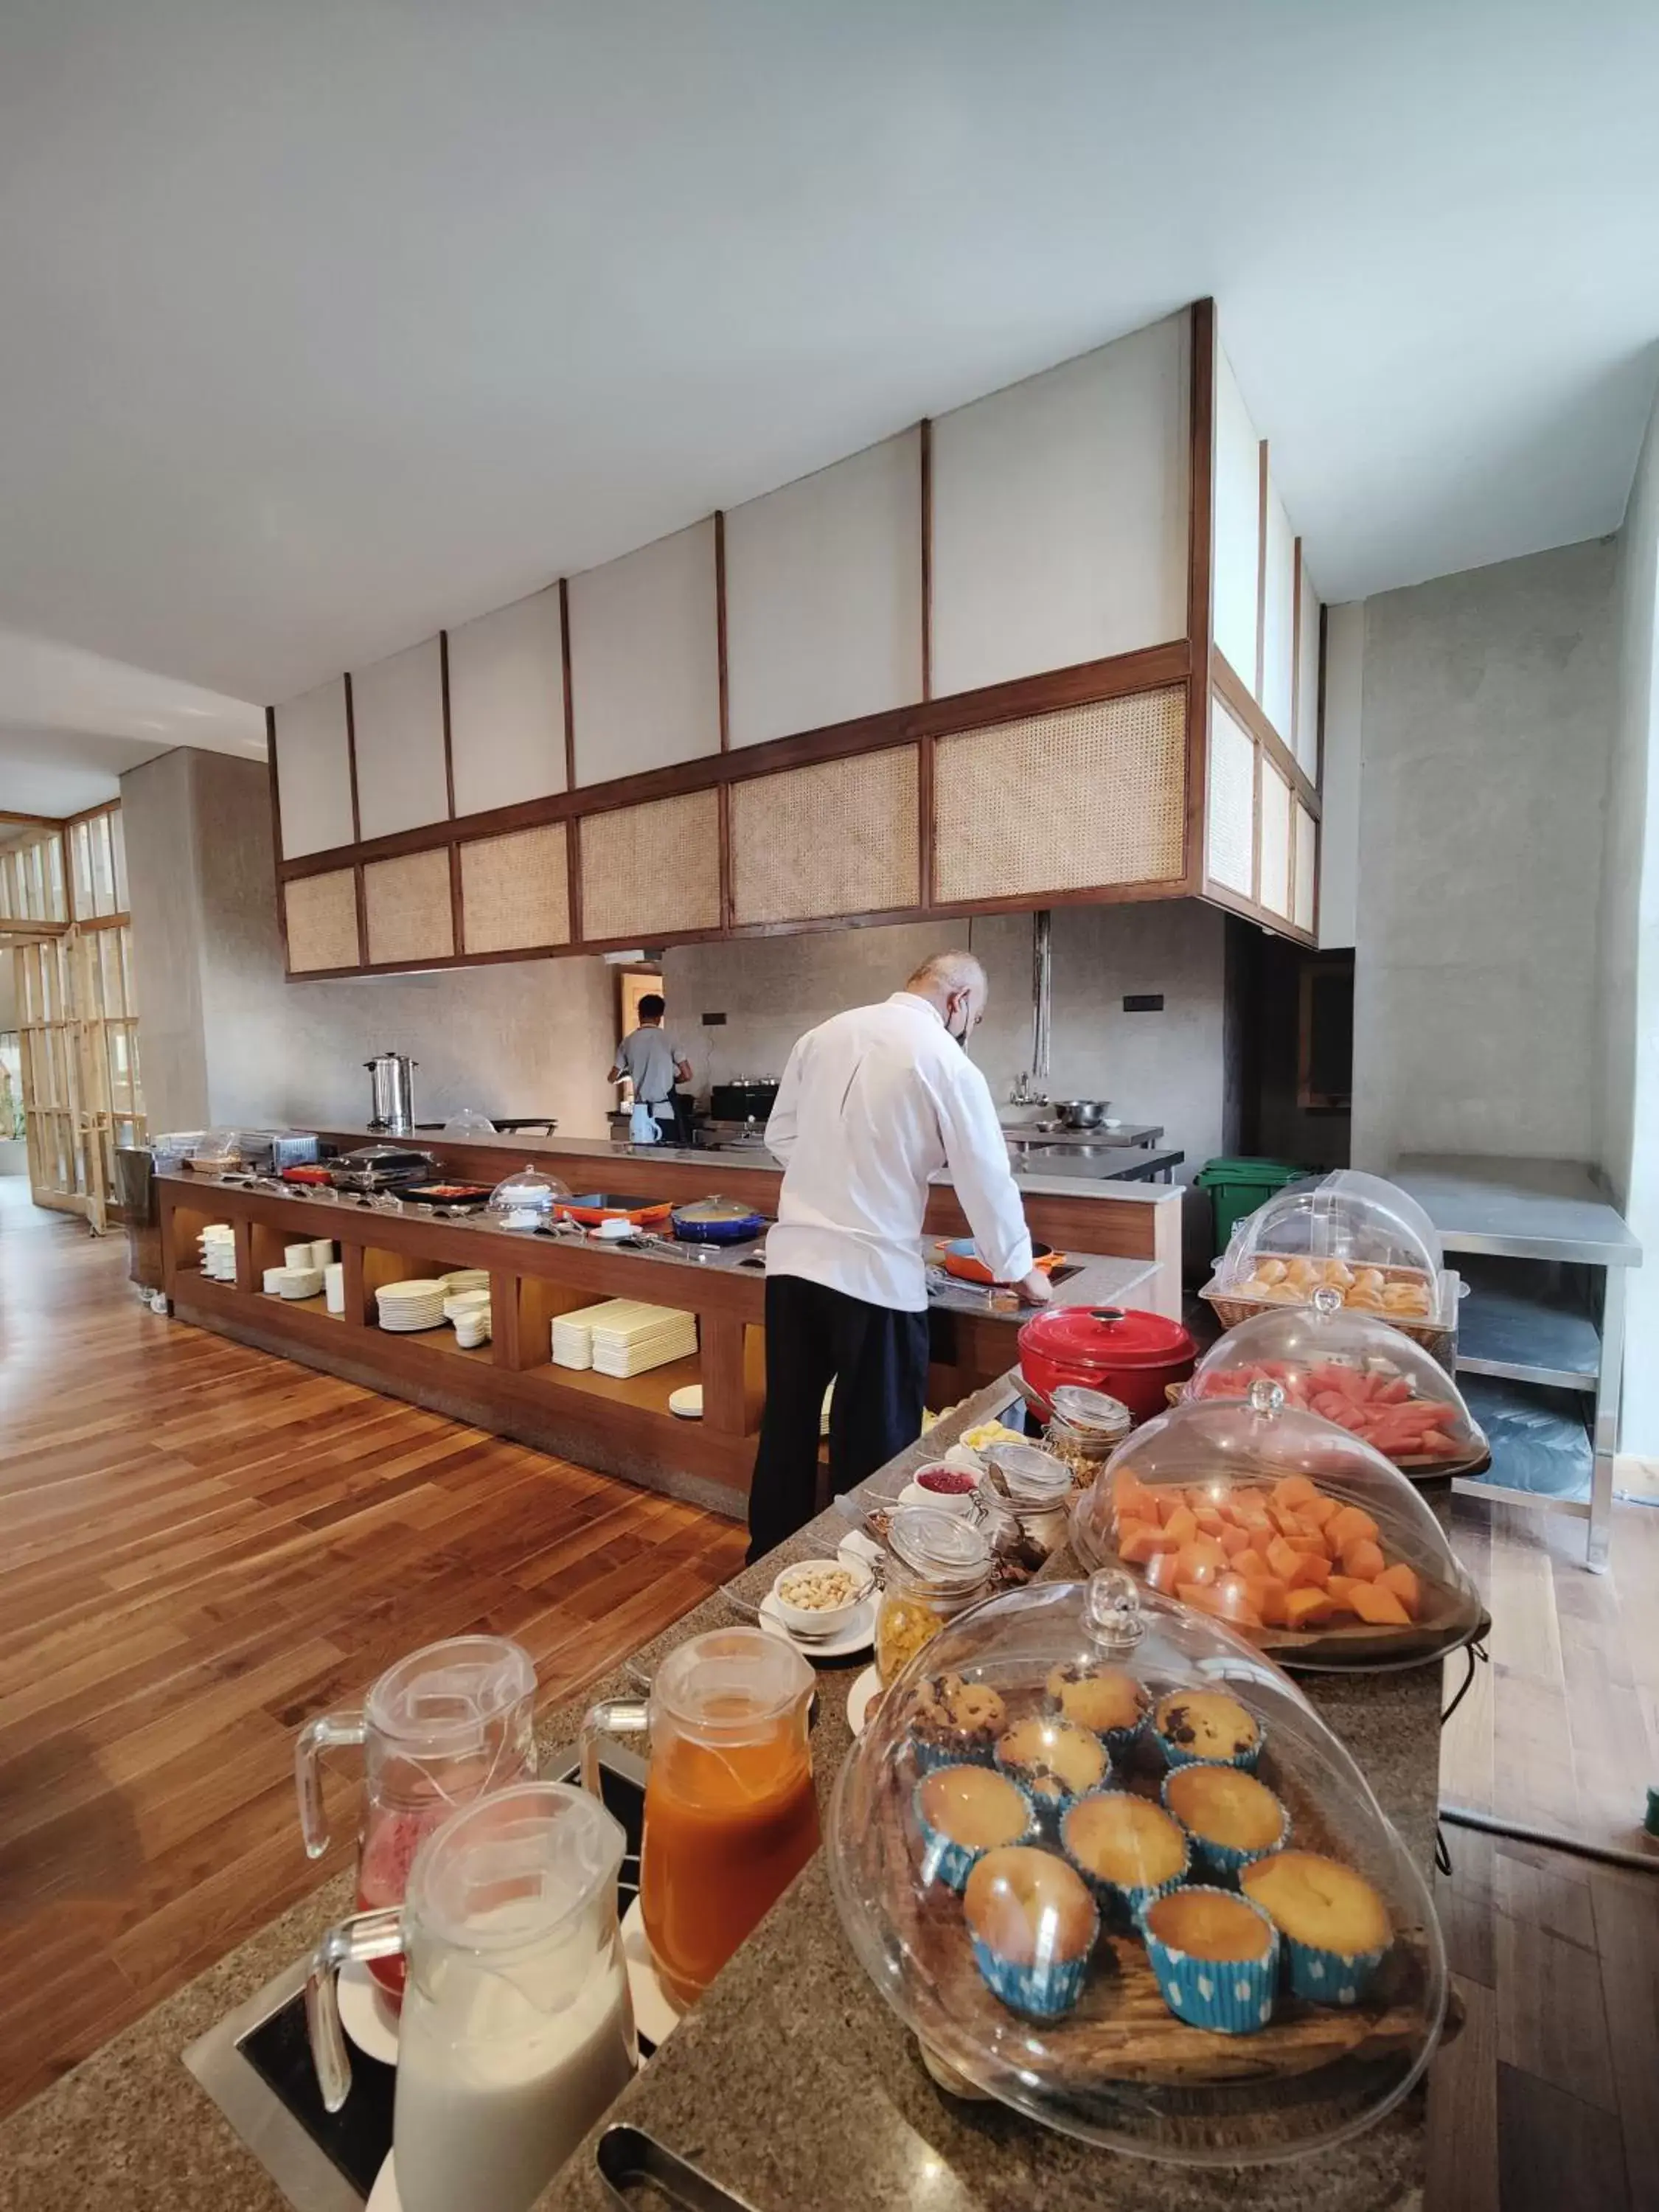 Buffet breakfast in Chospa Hotel, Leh